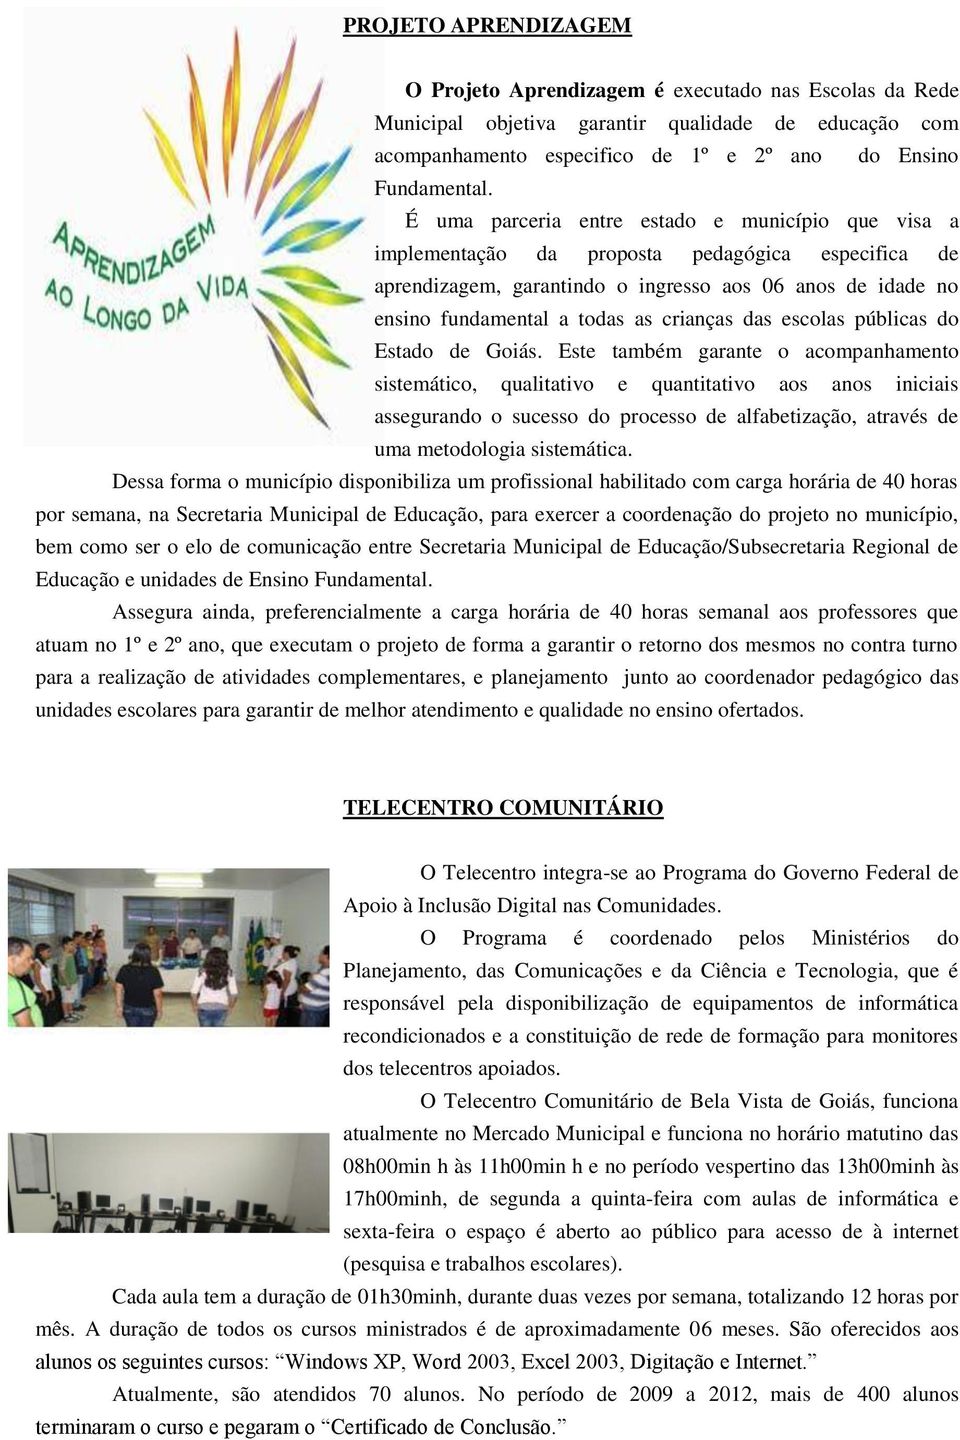 crianças das escolas públicas do Estado de Goiás.